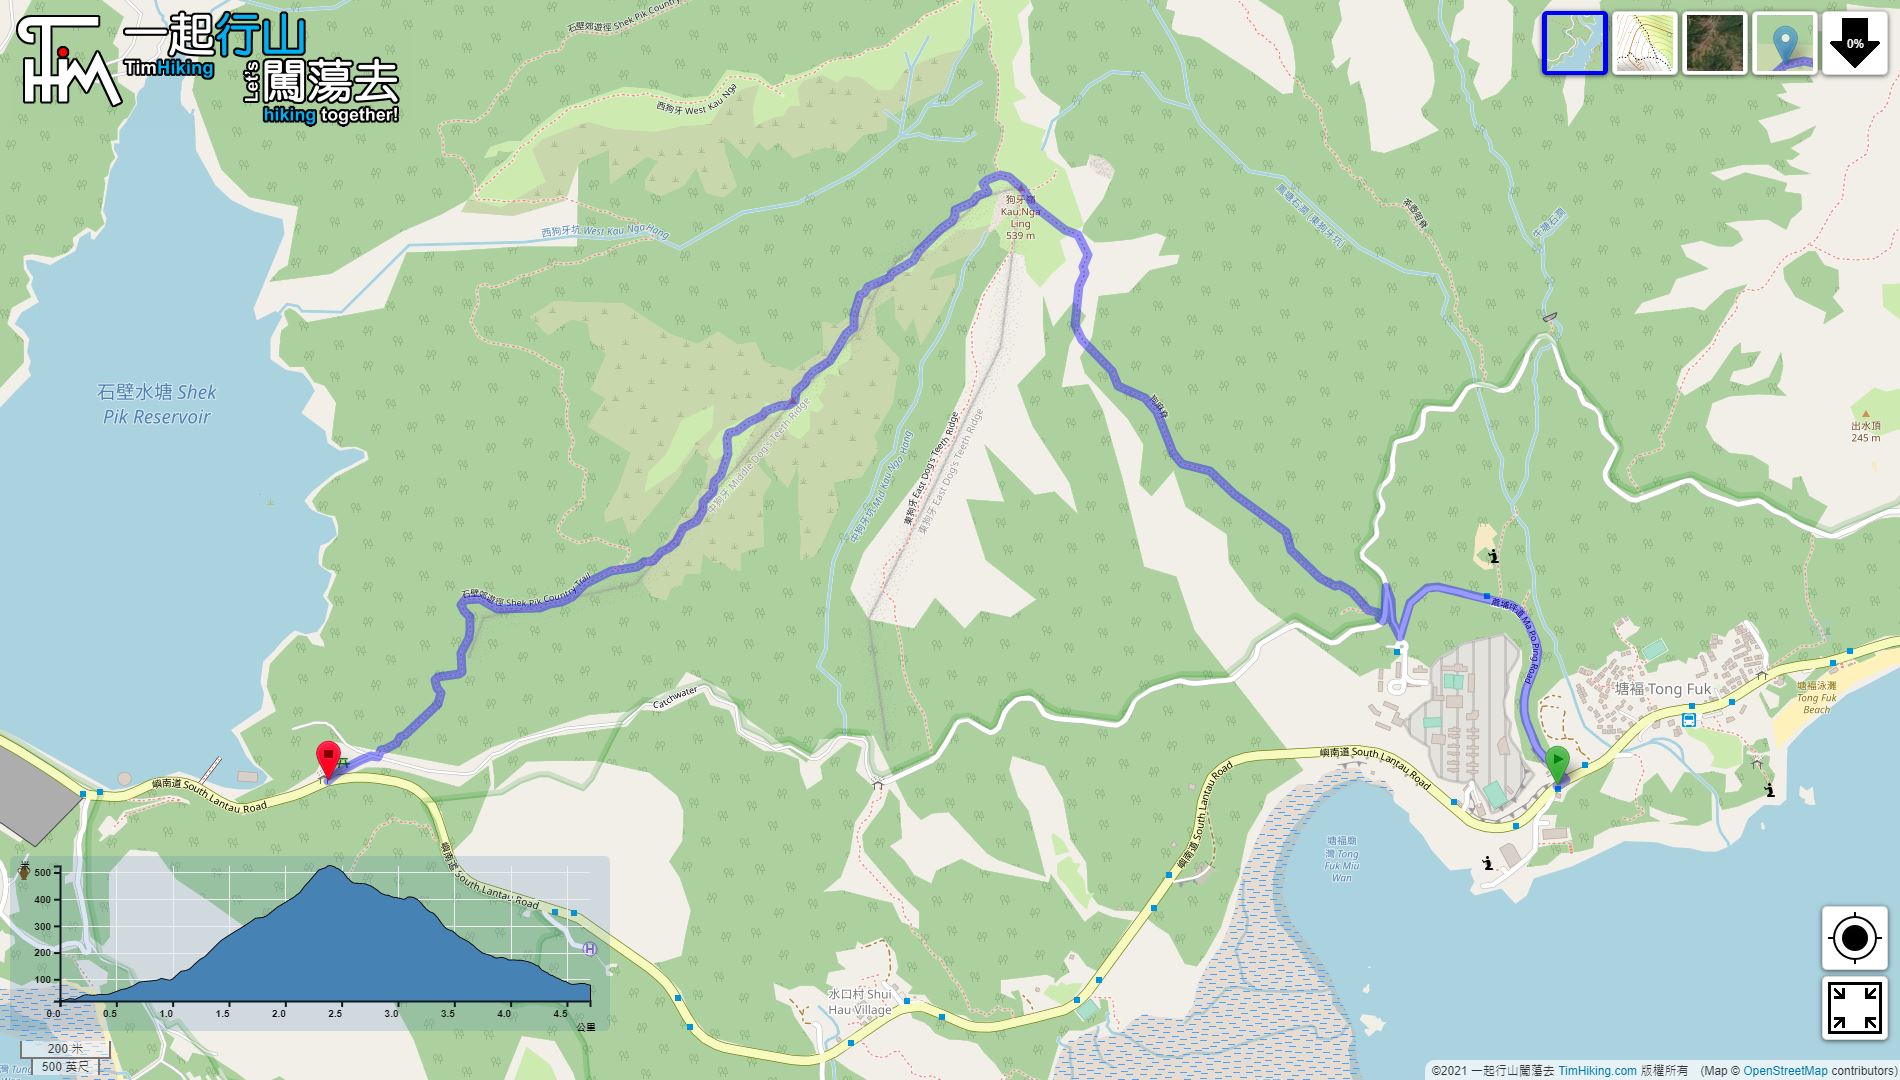 「Kau Ma Ridge, Chung Kau Nga Ridge」路線Map